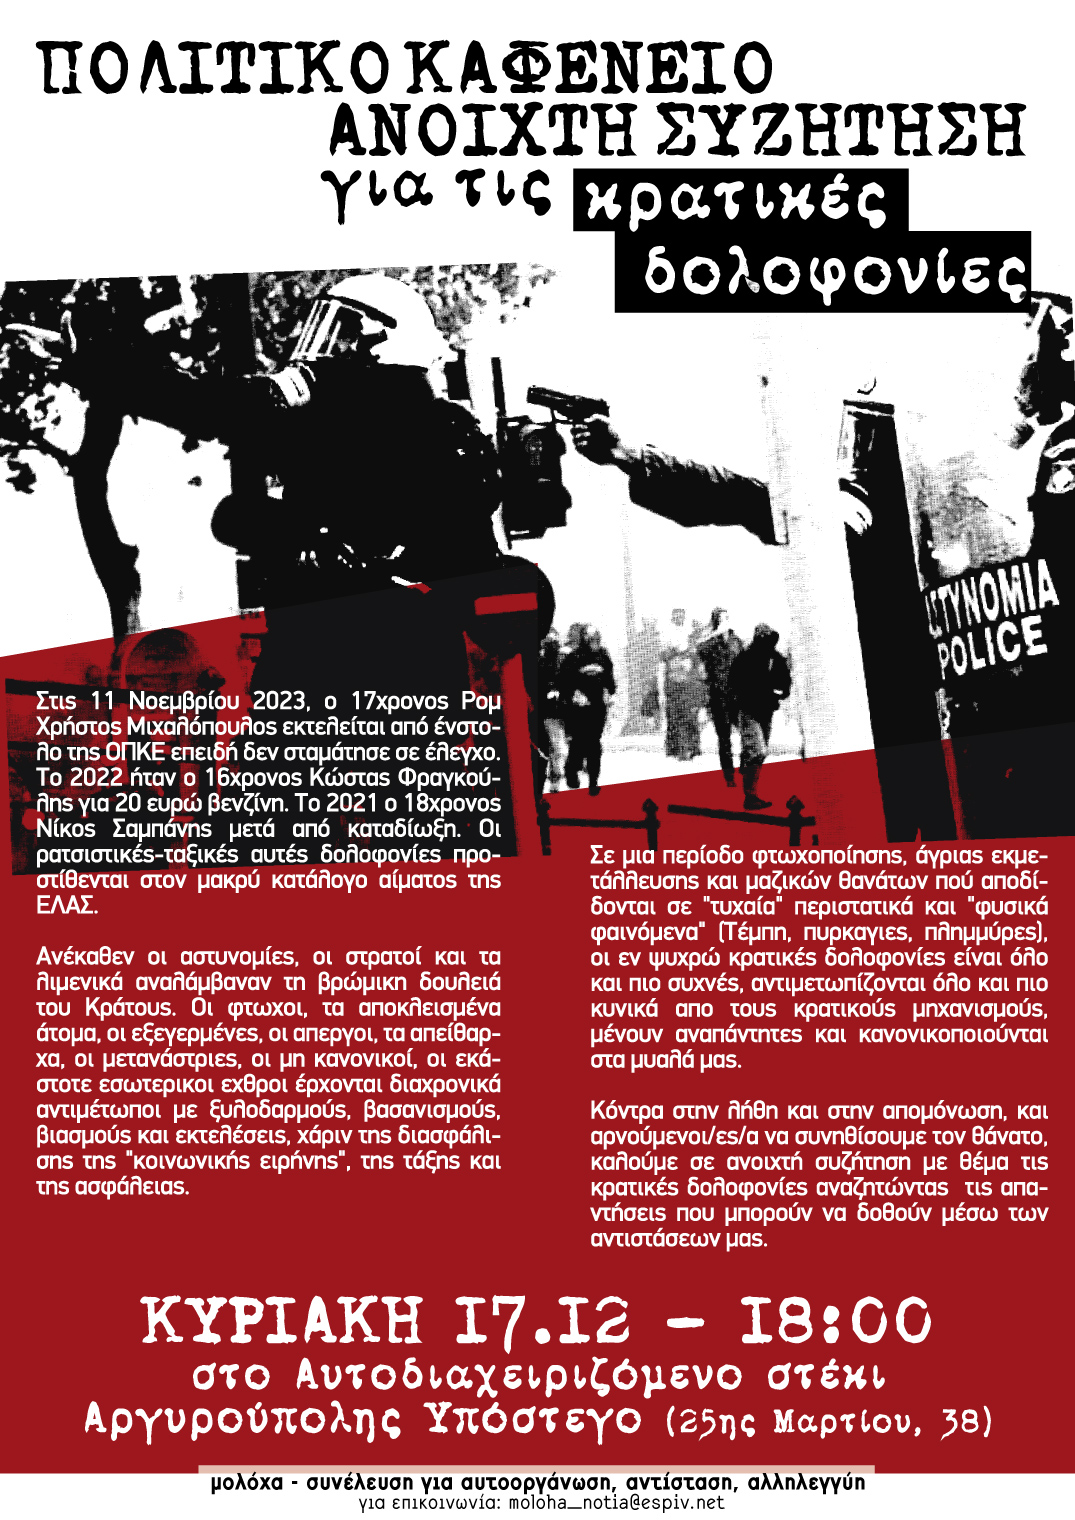 Αργυρούπολη: Ανοιχτή Συζήτηση – Πολιτικό Καφενείο για τις Κρατικές Δολοφονίες 